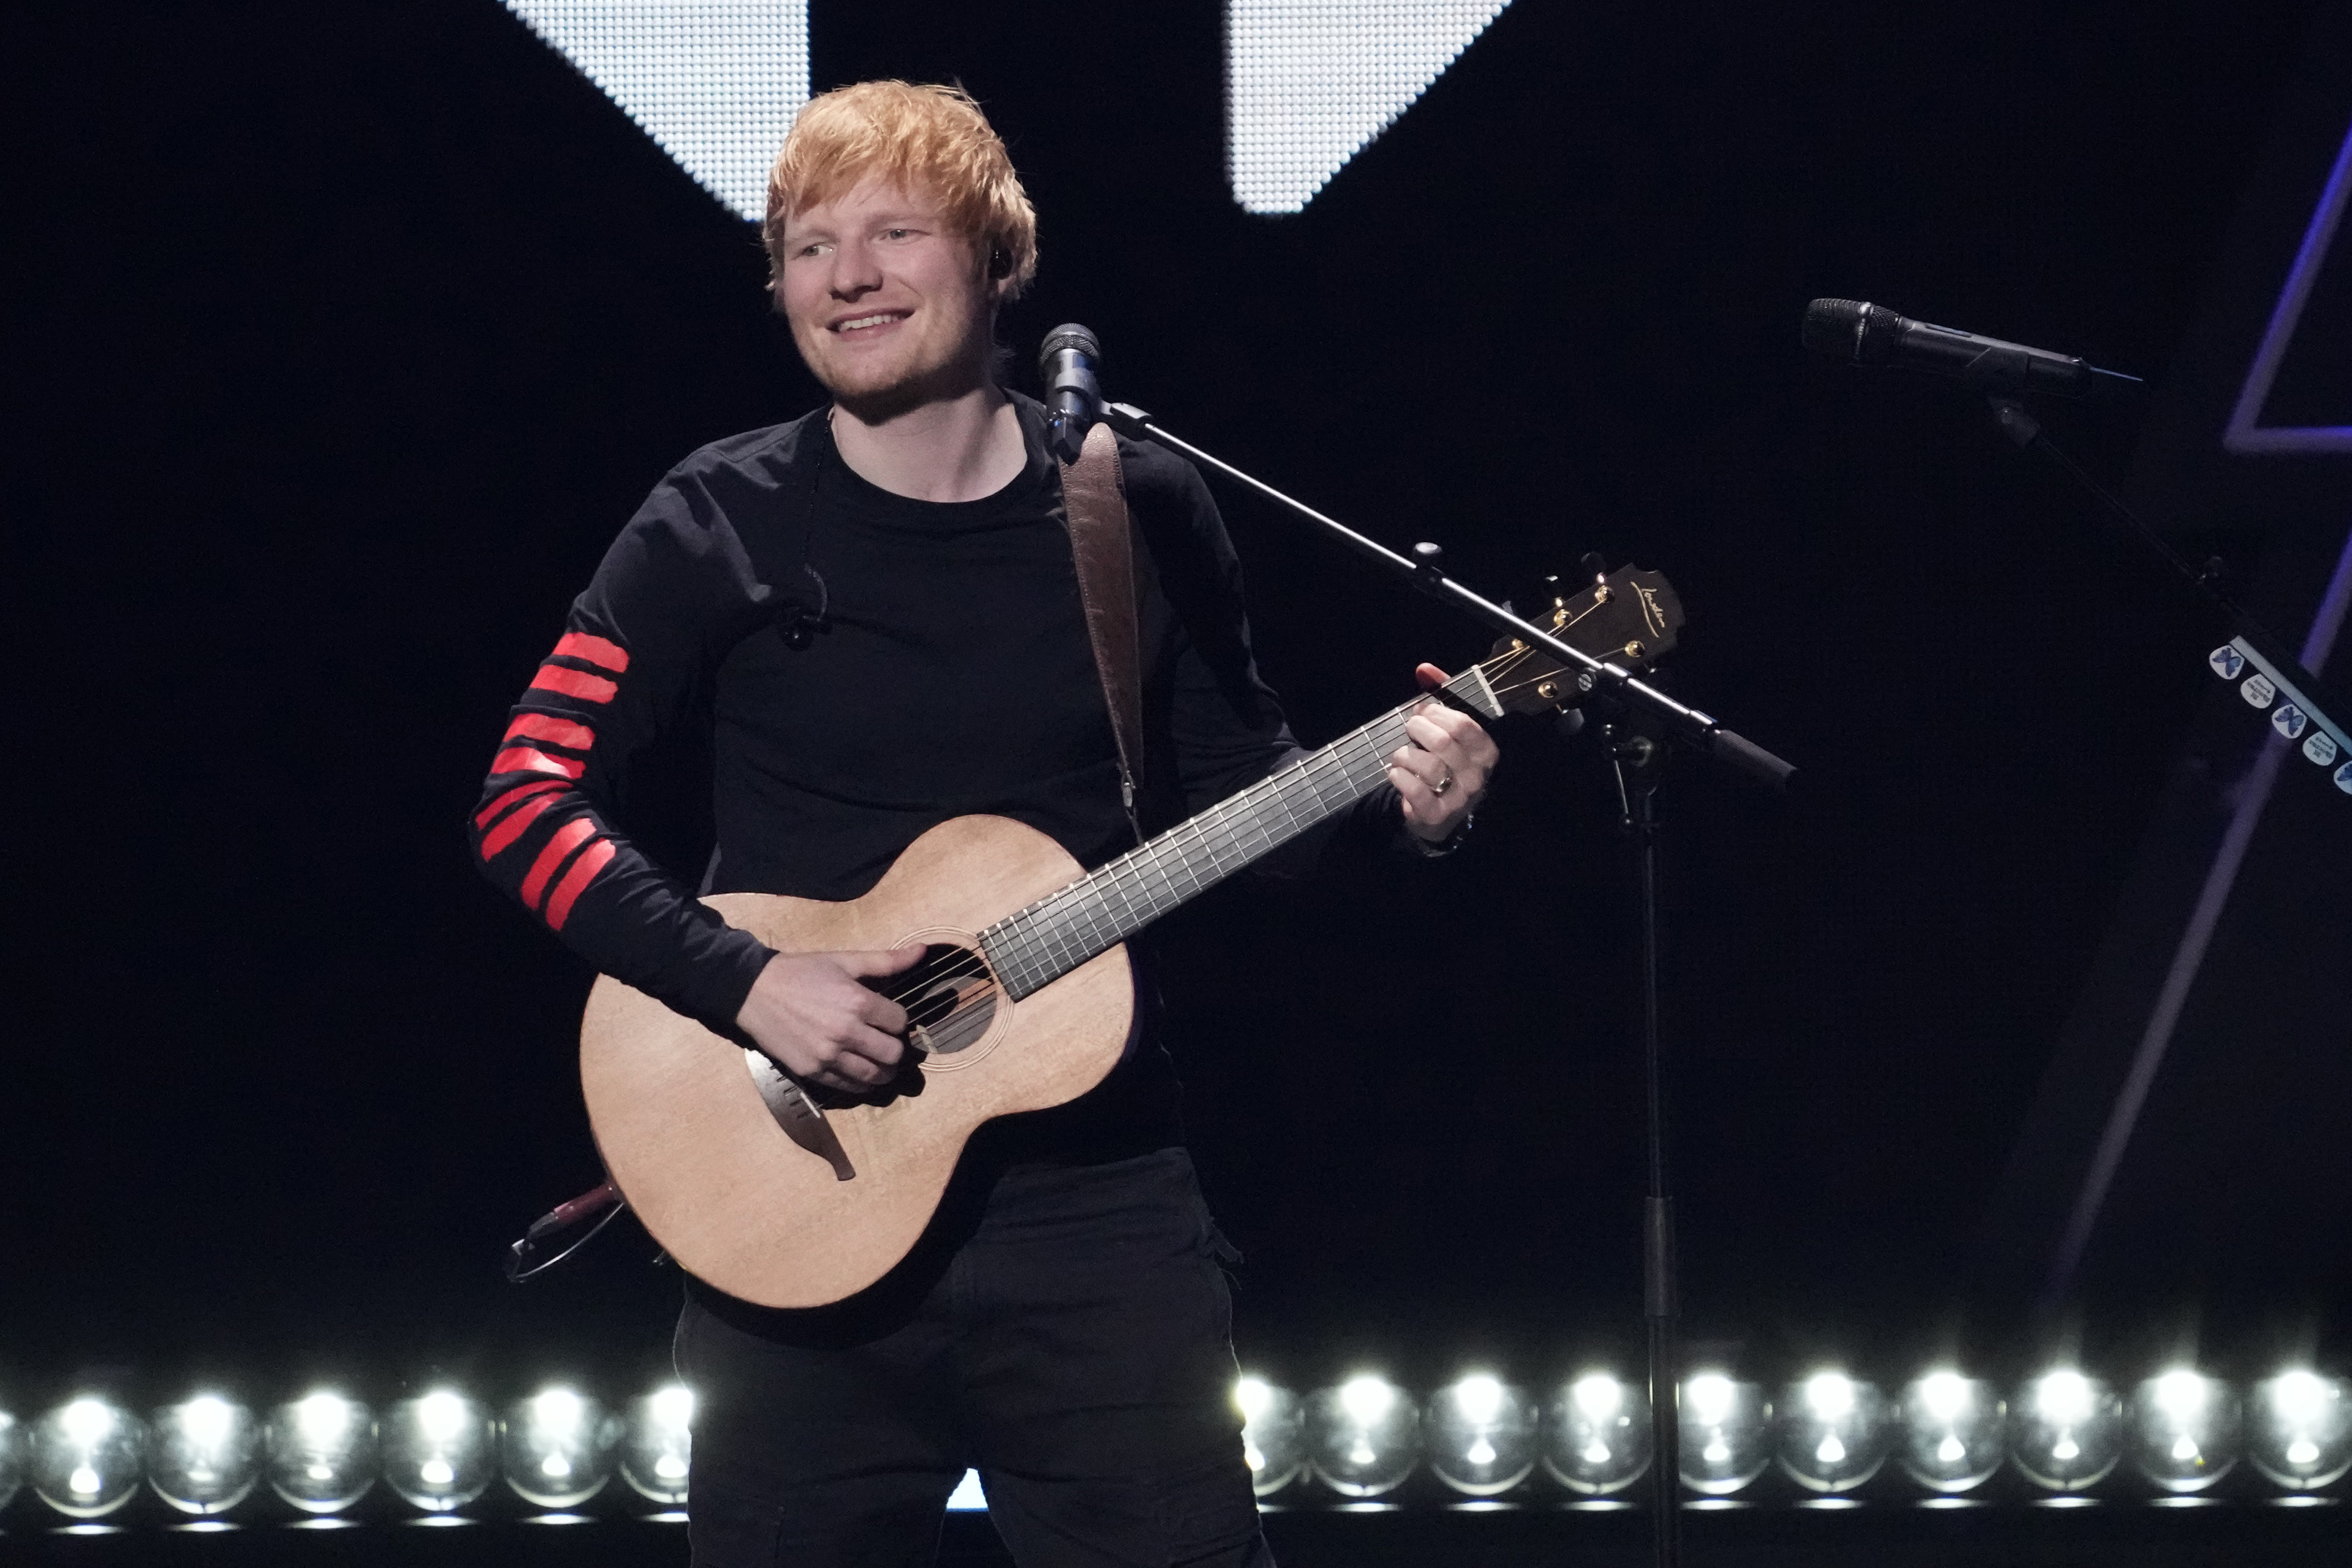 This image shows Ed Sheeran performing at a concert